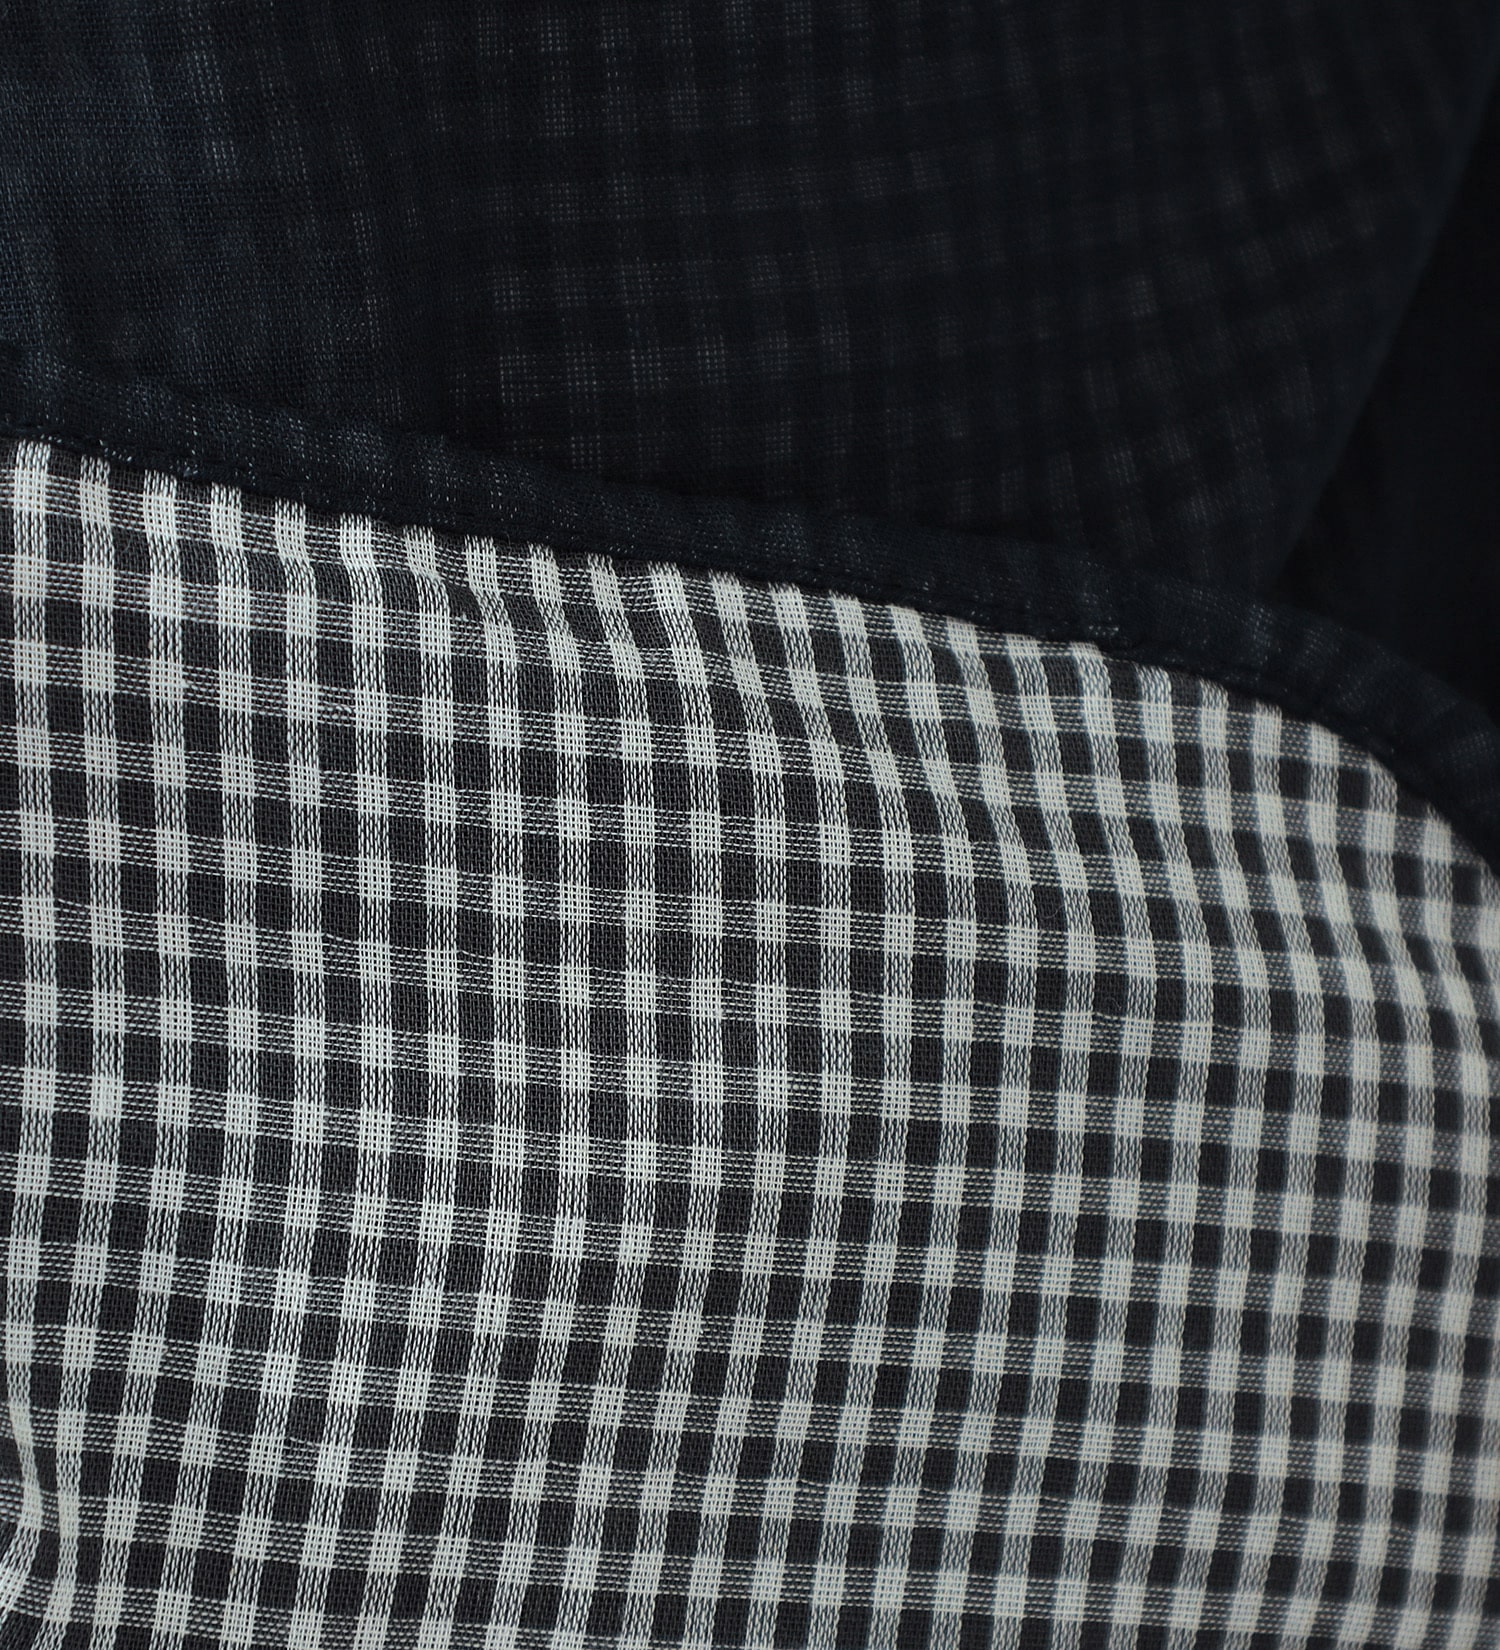 EDWIN(エドウイン)の【GW SALE】ダブルガーゼ バンドカラーシャツ 長袖【アウトレット店舗・WEB限定】|トップス/シャツ/ブラウス/レディース|ネイビー